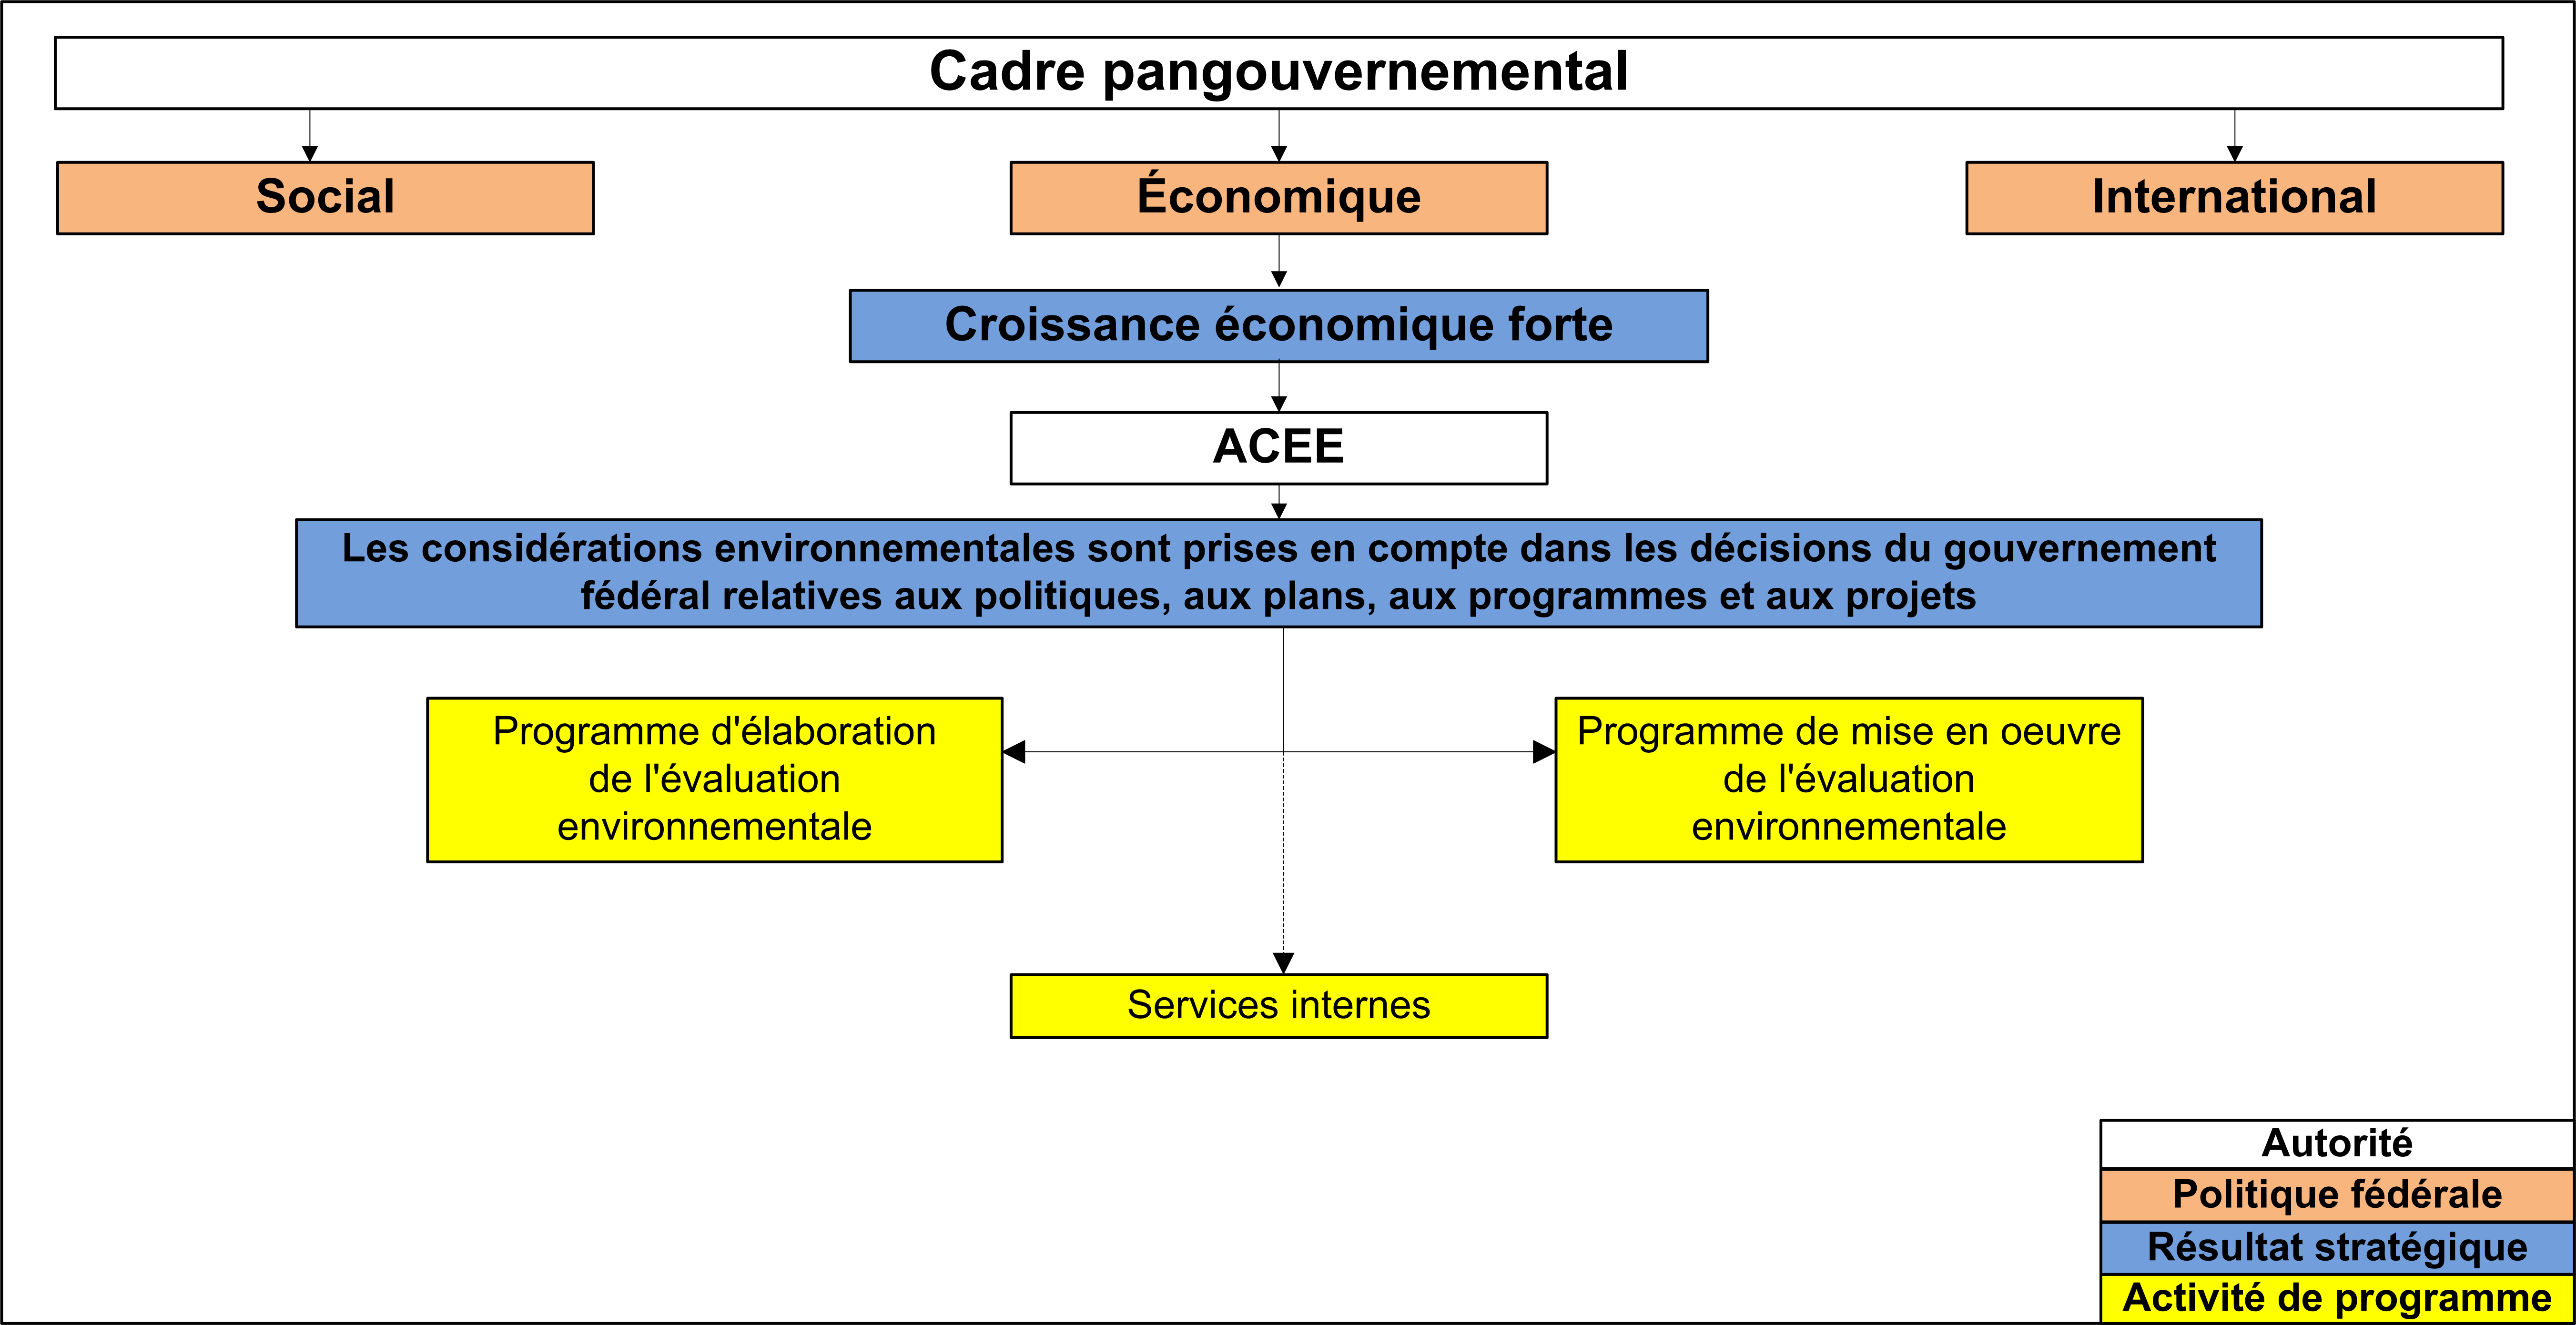 Architecture d’activité de programme de l'Agence canadienne d'évaluation environnementale